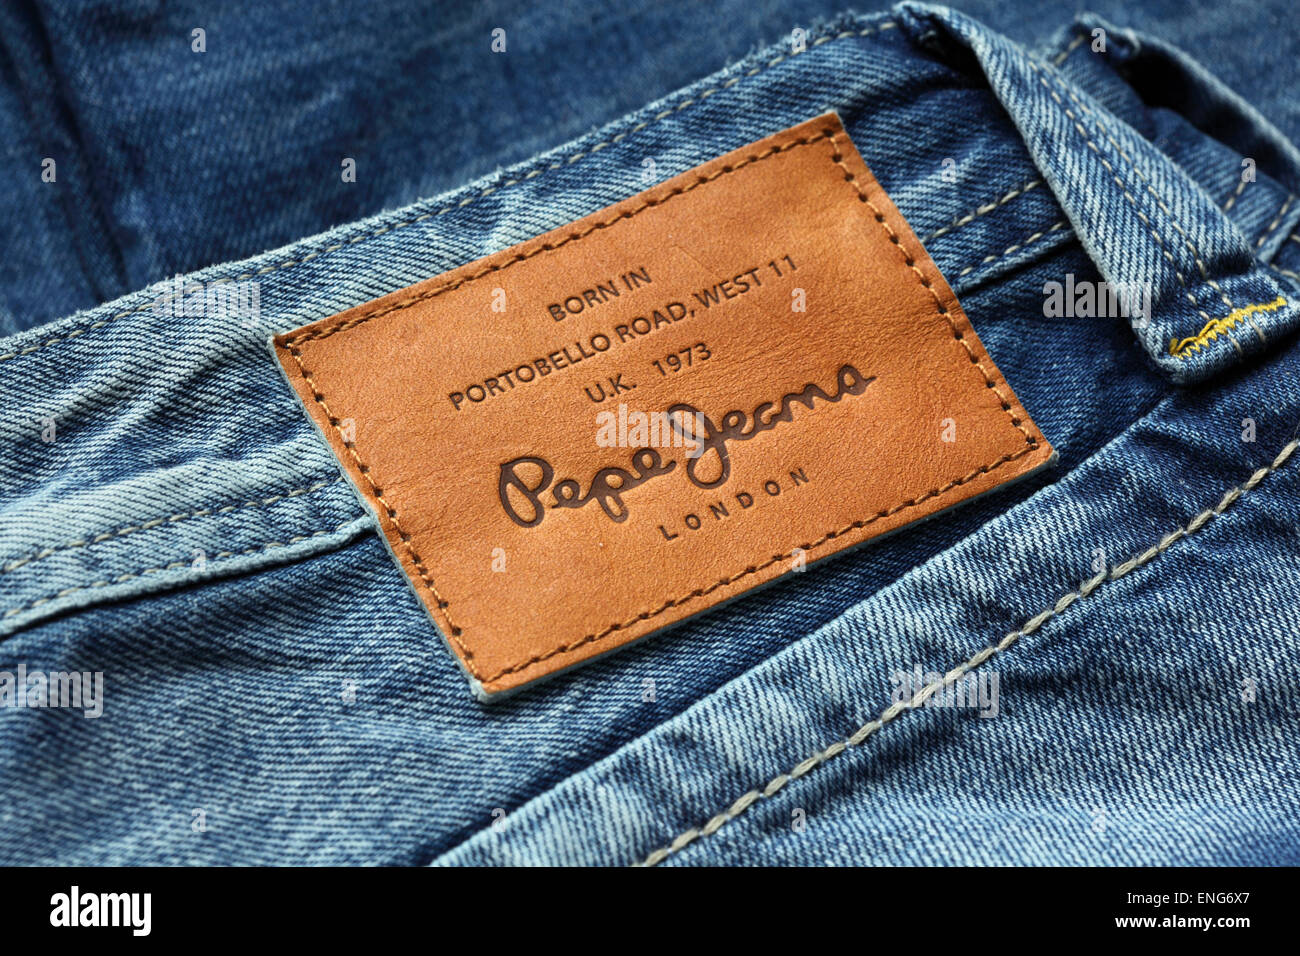 Pepe jeans immagini e fotografie stock ad alta risoluzione - Alamy